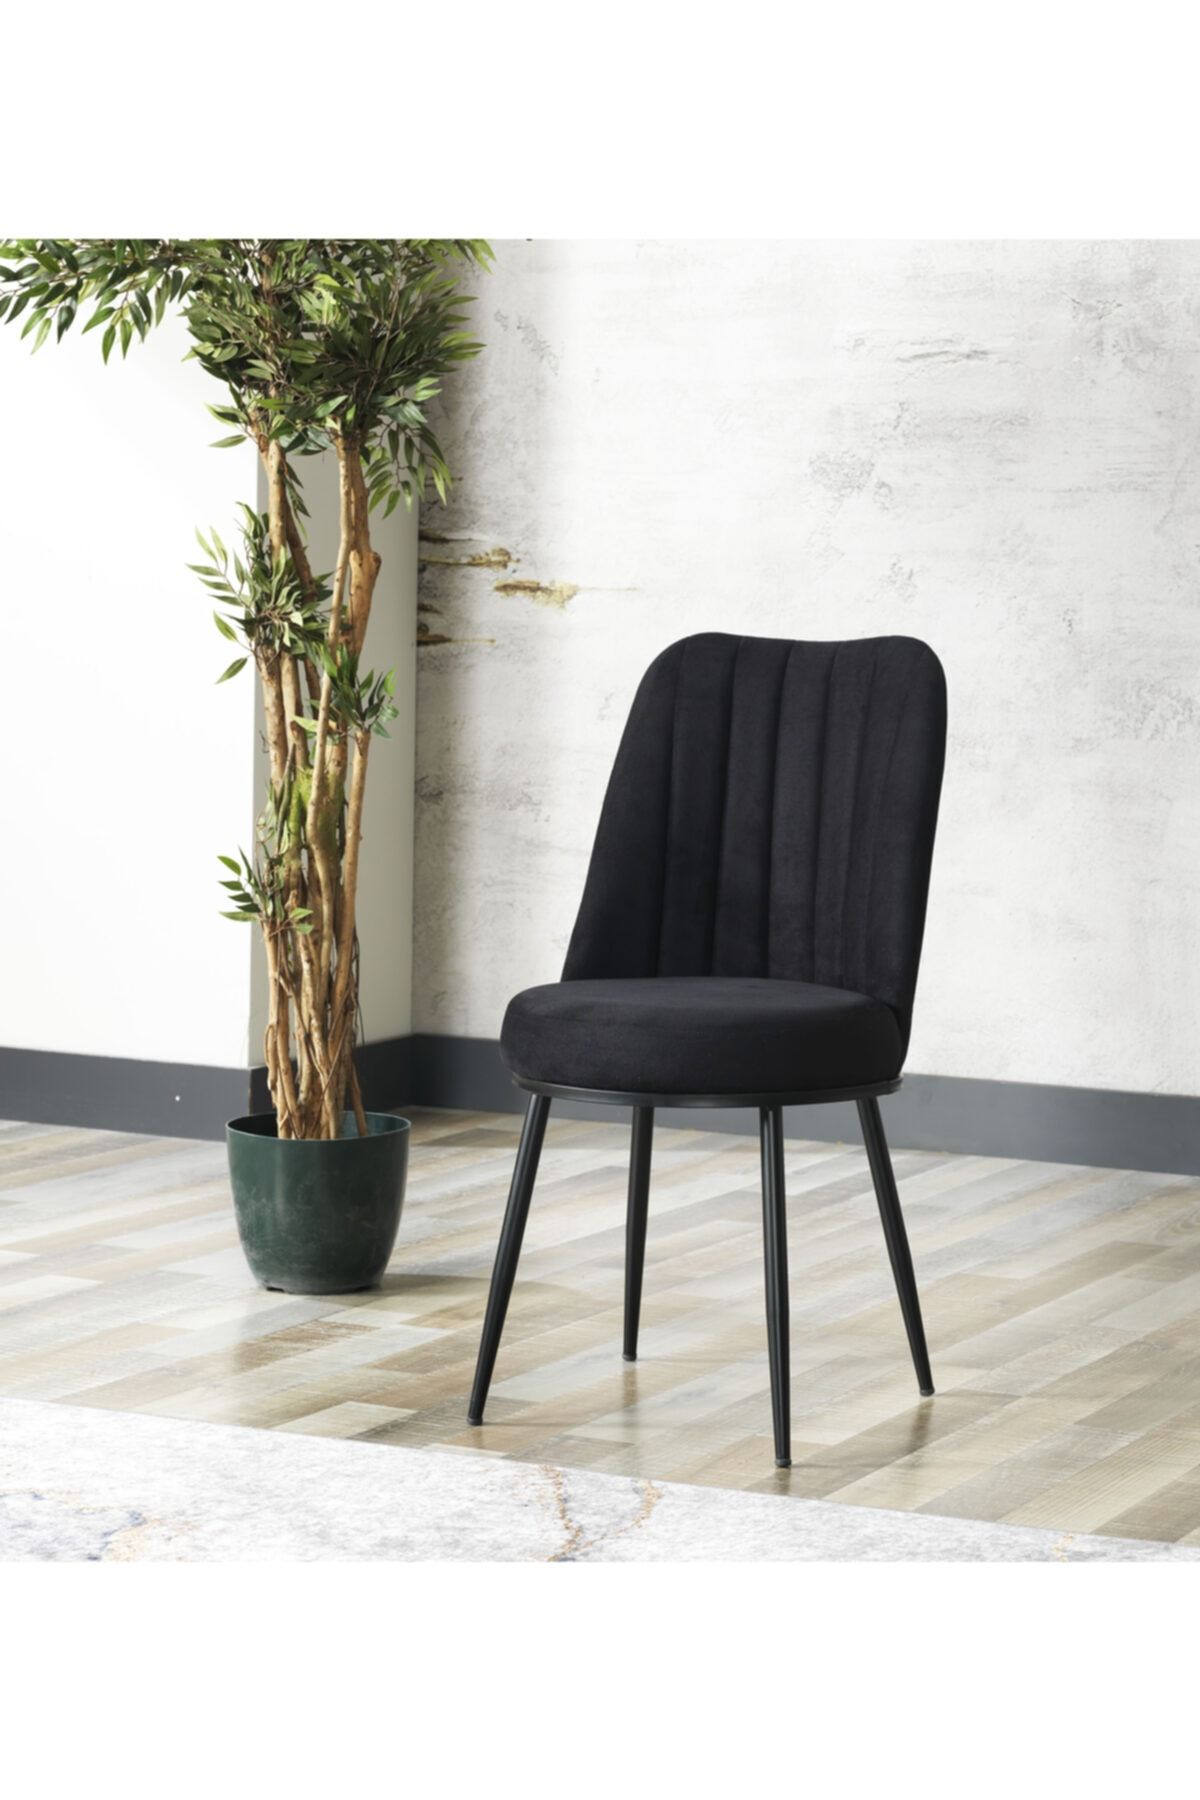 Avvio Gold Sandalye- Yemek Masası Sandalyesi - Mutfak Masası Sandalyesi Siyah Renk- Metal Siyah Ayak